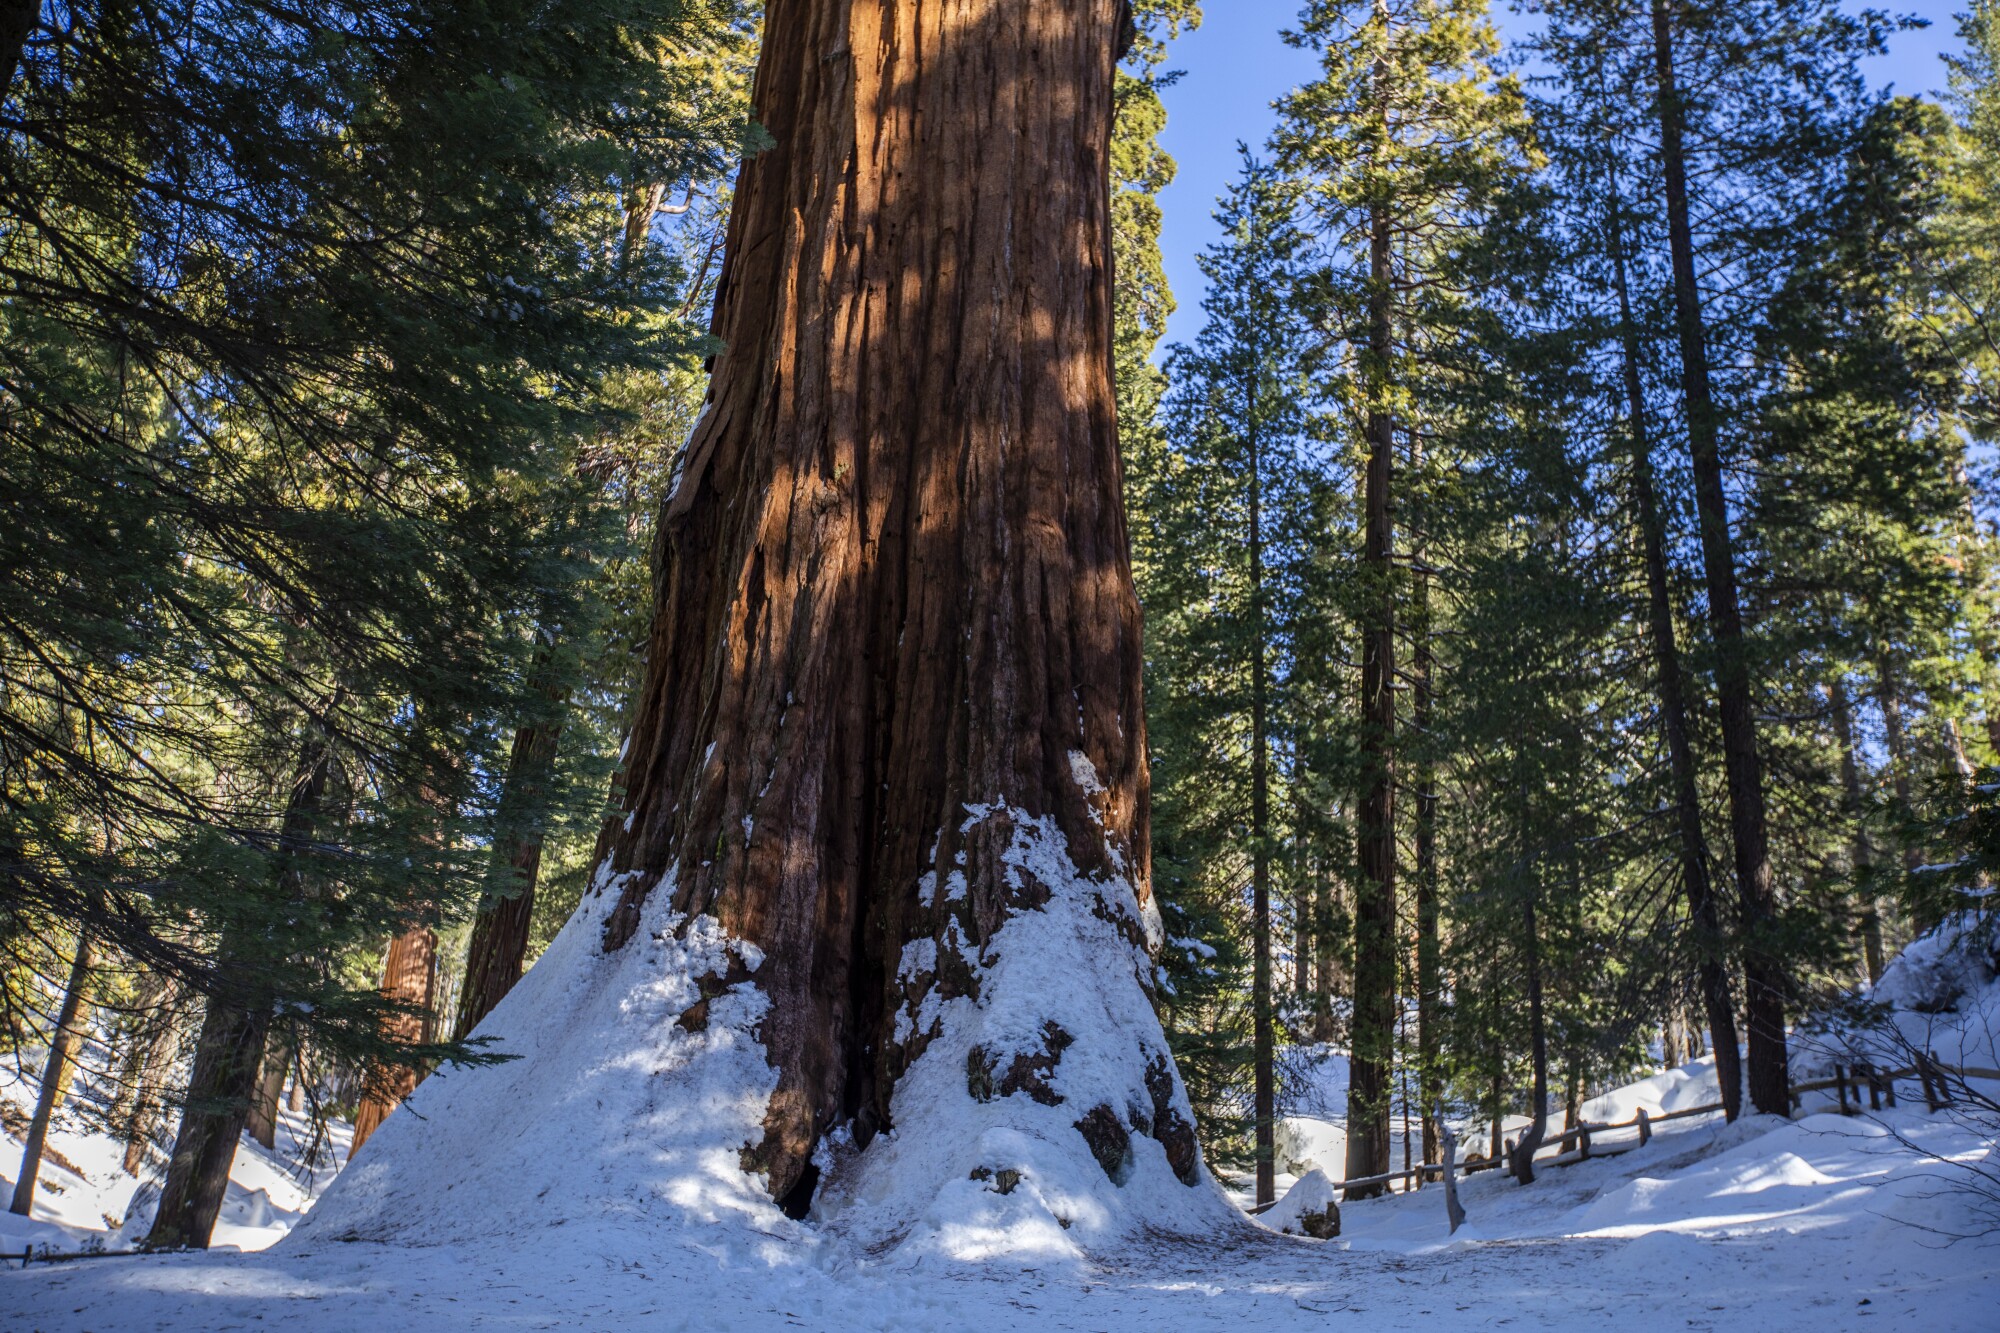 تنه یک چوب قرمز کوتوله عظیم در اطراف درختان در حالی که از زمین پوشیده از برف بلند می شود